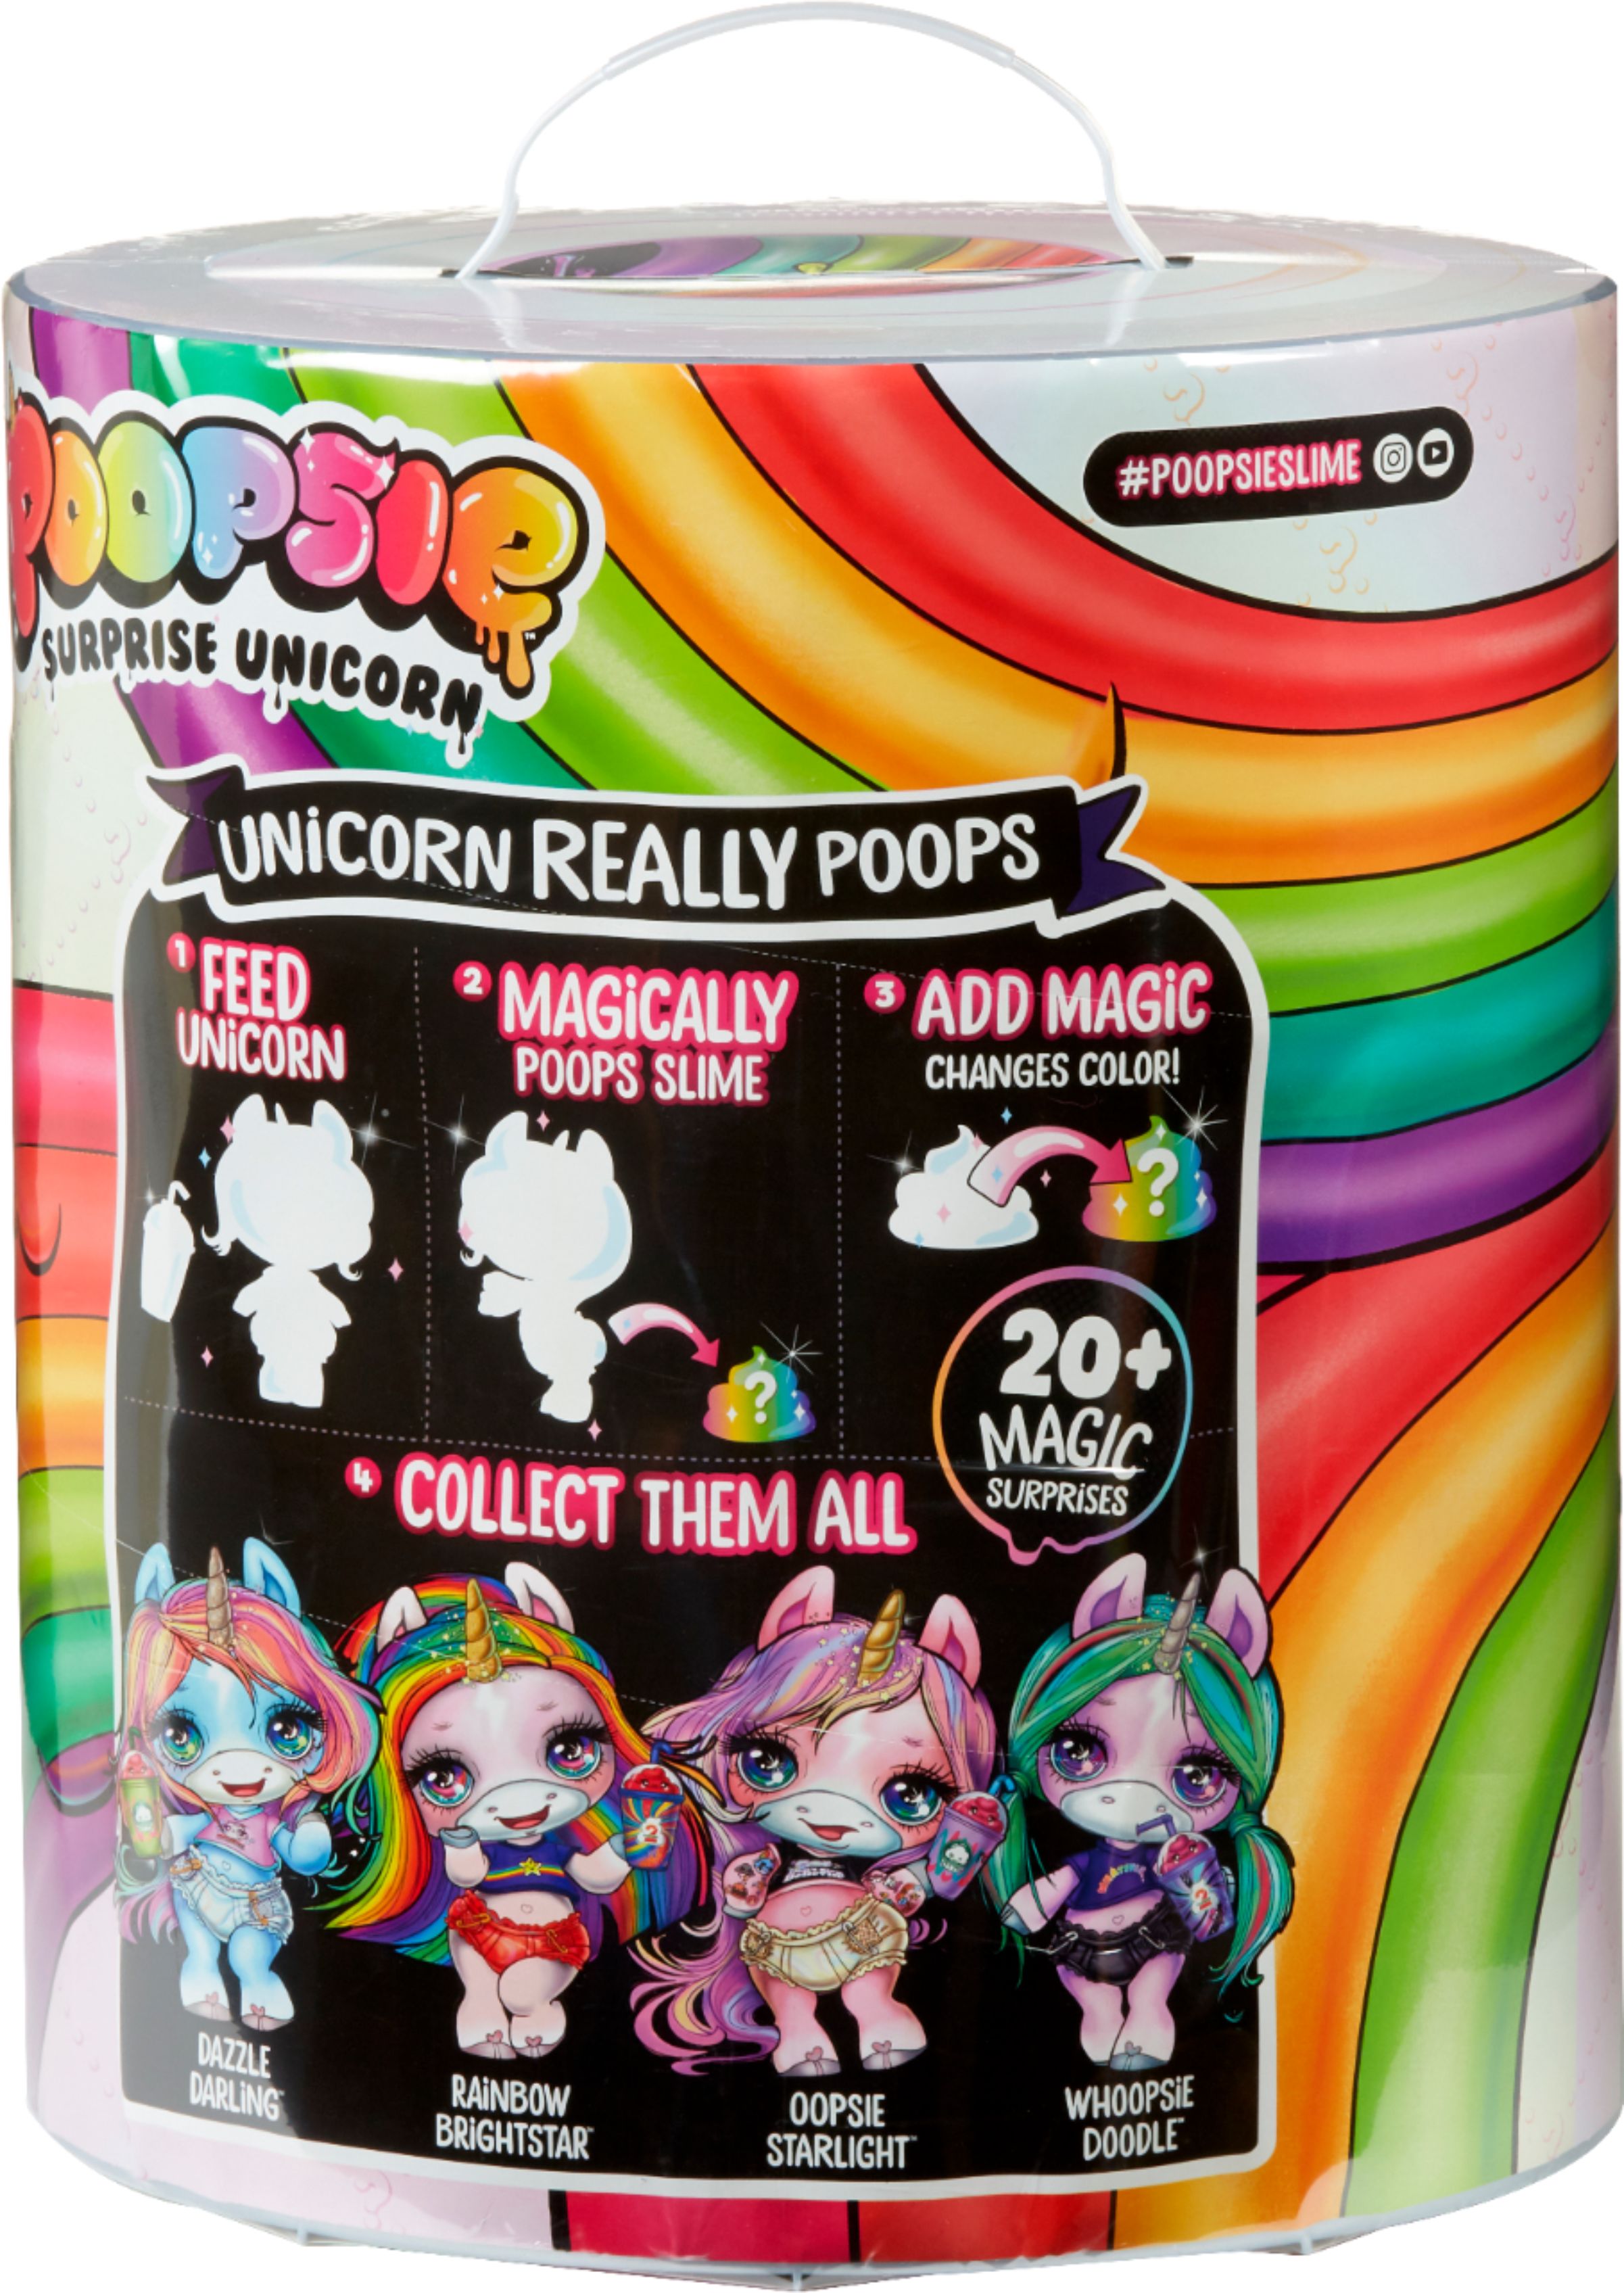 Best Buy: Poopsie Surprise Unicorn Figure Rainbow Brightstar or Oopsie Starlight 551447